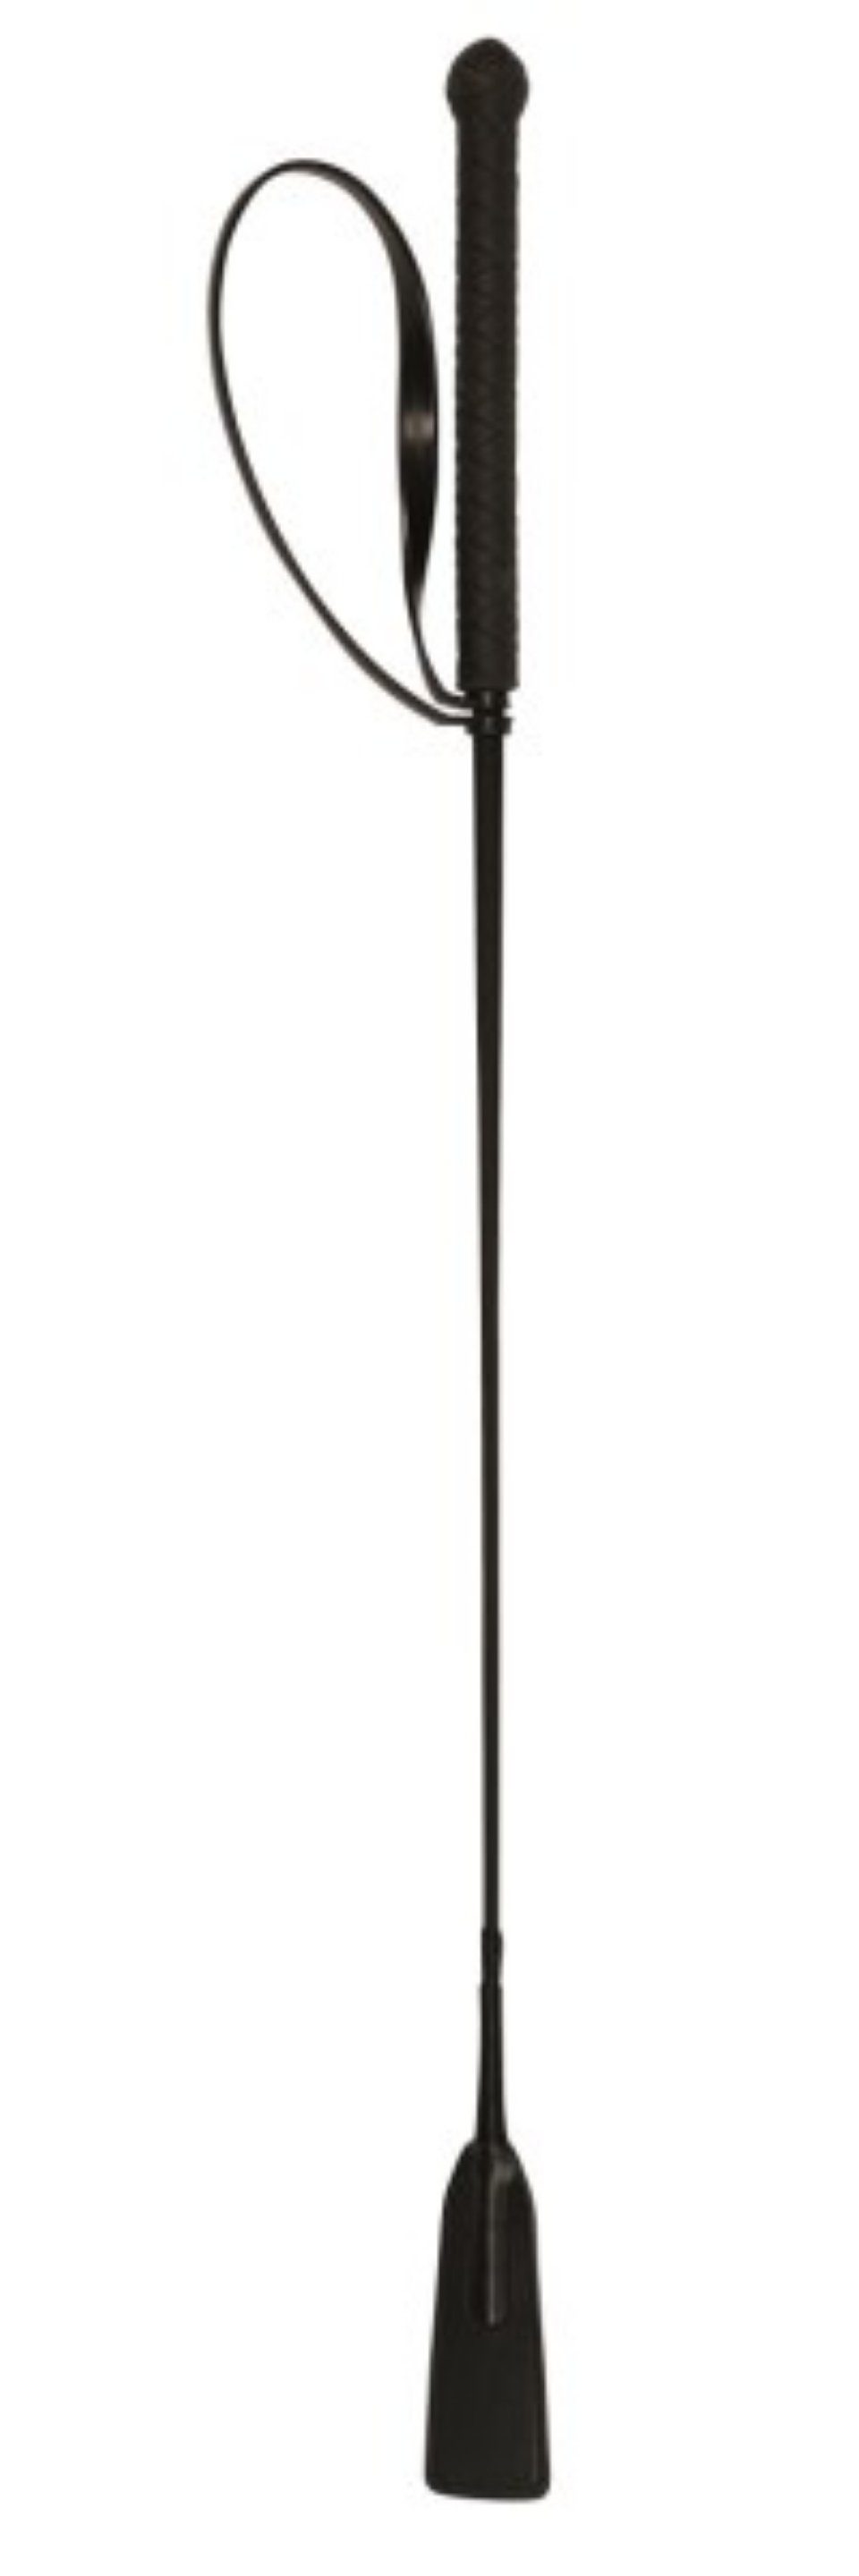 Kerbl Springgerte Springgerte mit Klatsche 65 cm schwarz 32364, 1-tlg.